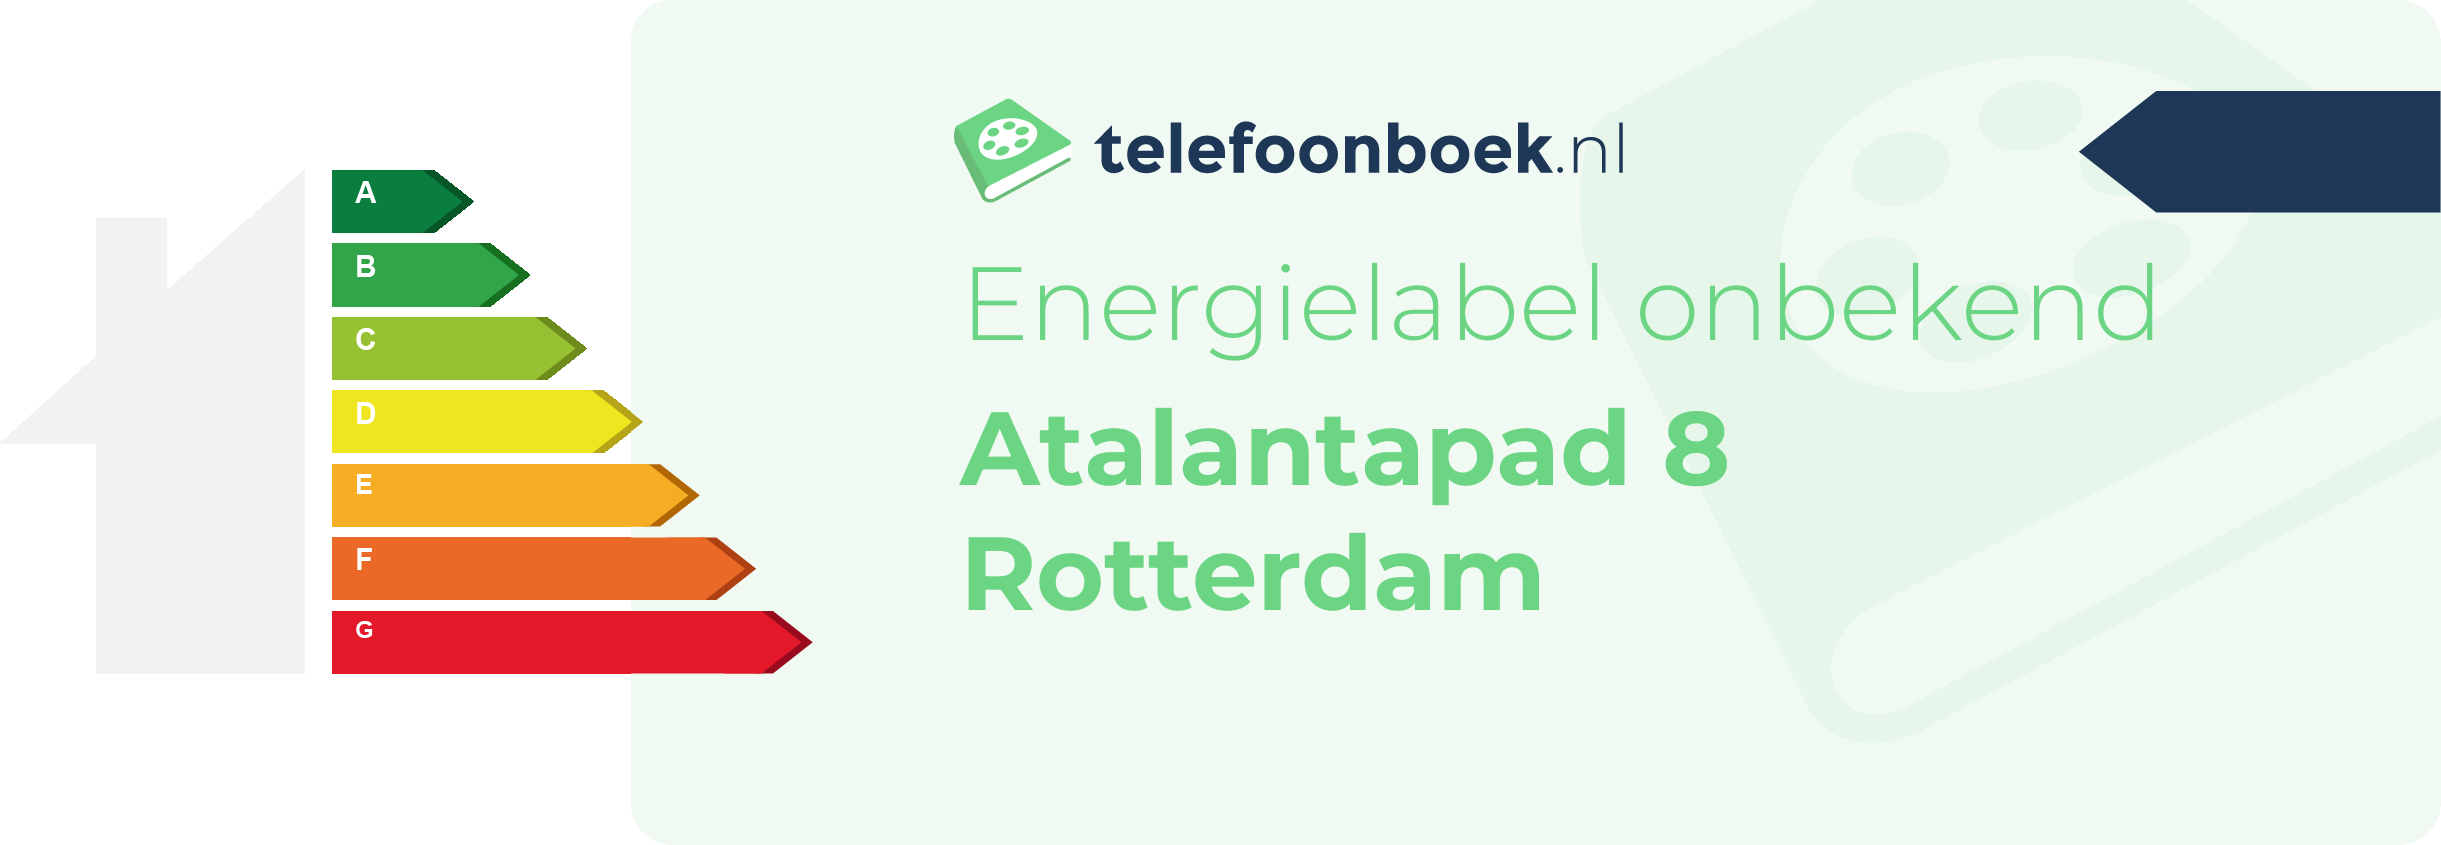 Energielabel Atalantapad 8 Rotterdam